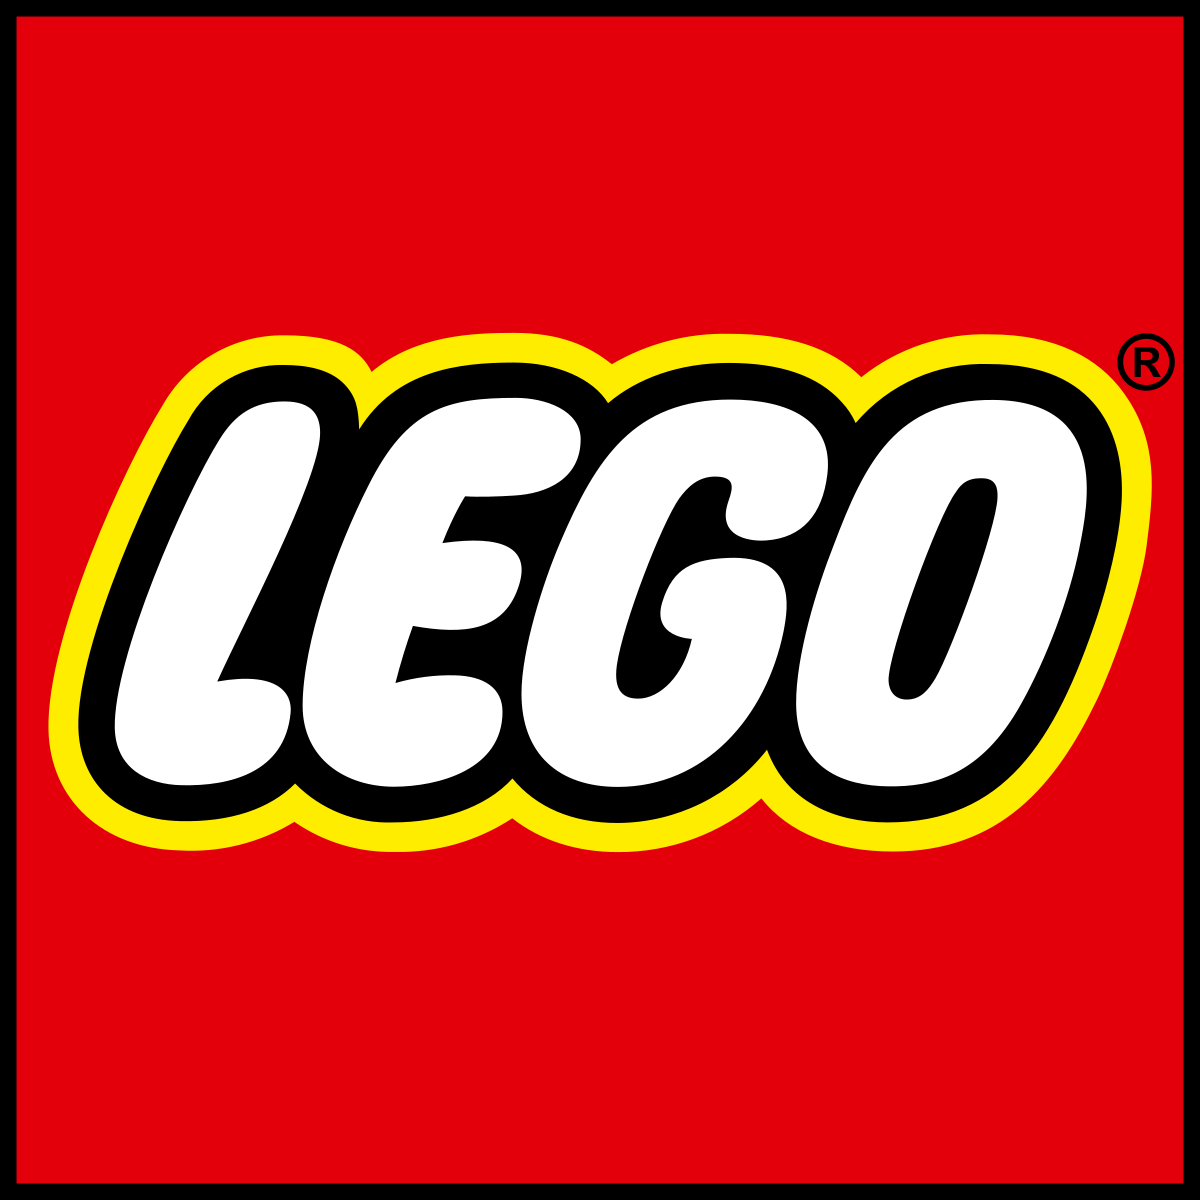 Lego fun!